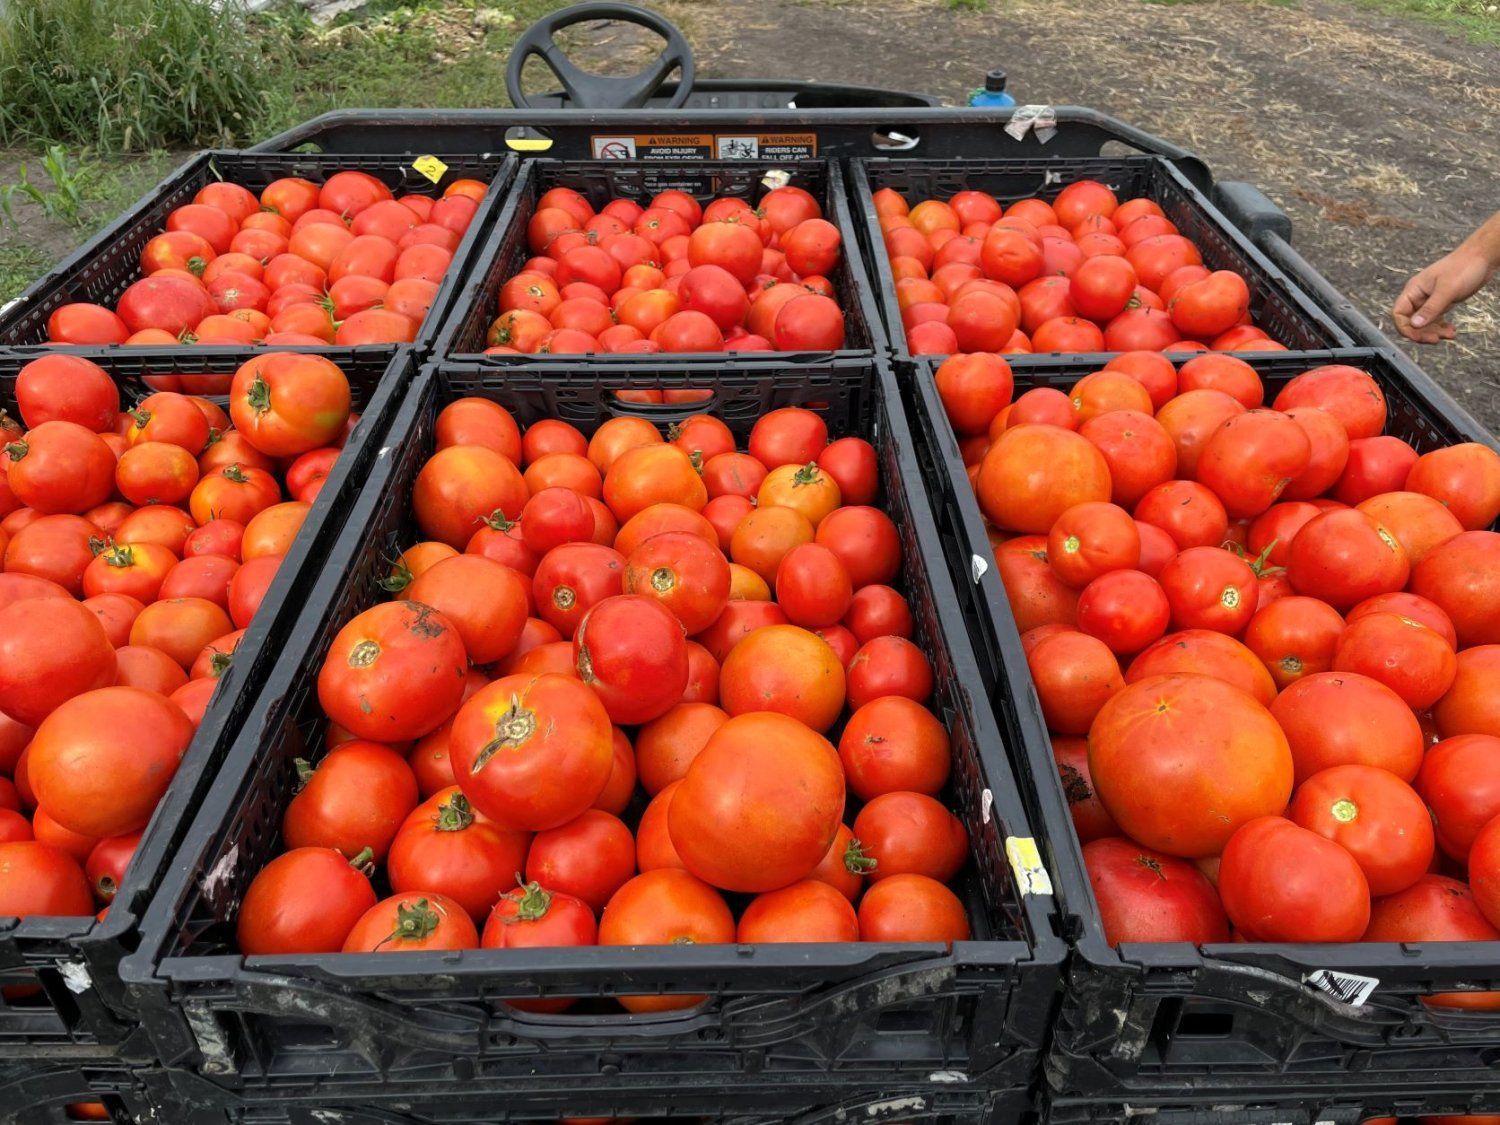 Peak Tomatoes & U of MN Tomato Study on Our Farm